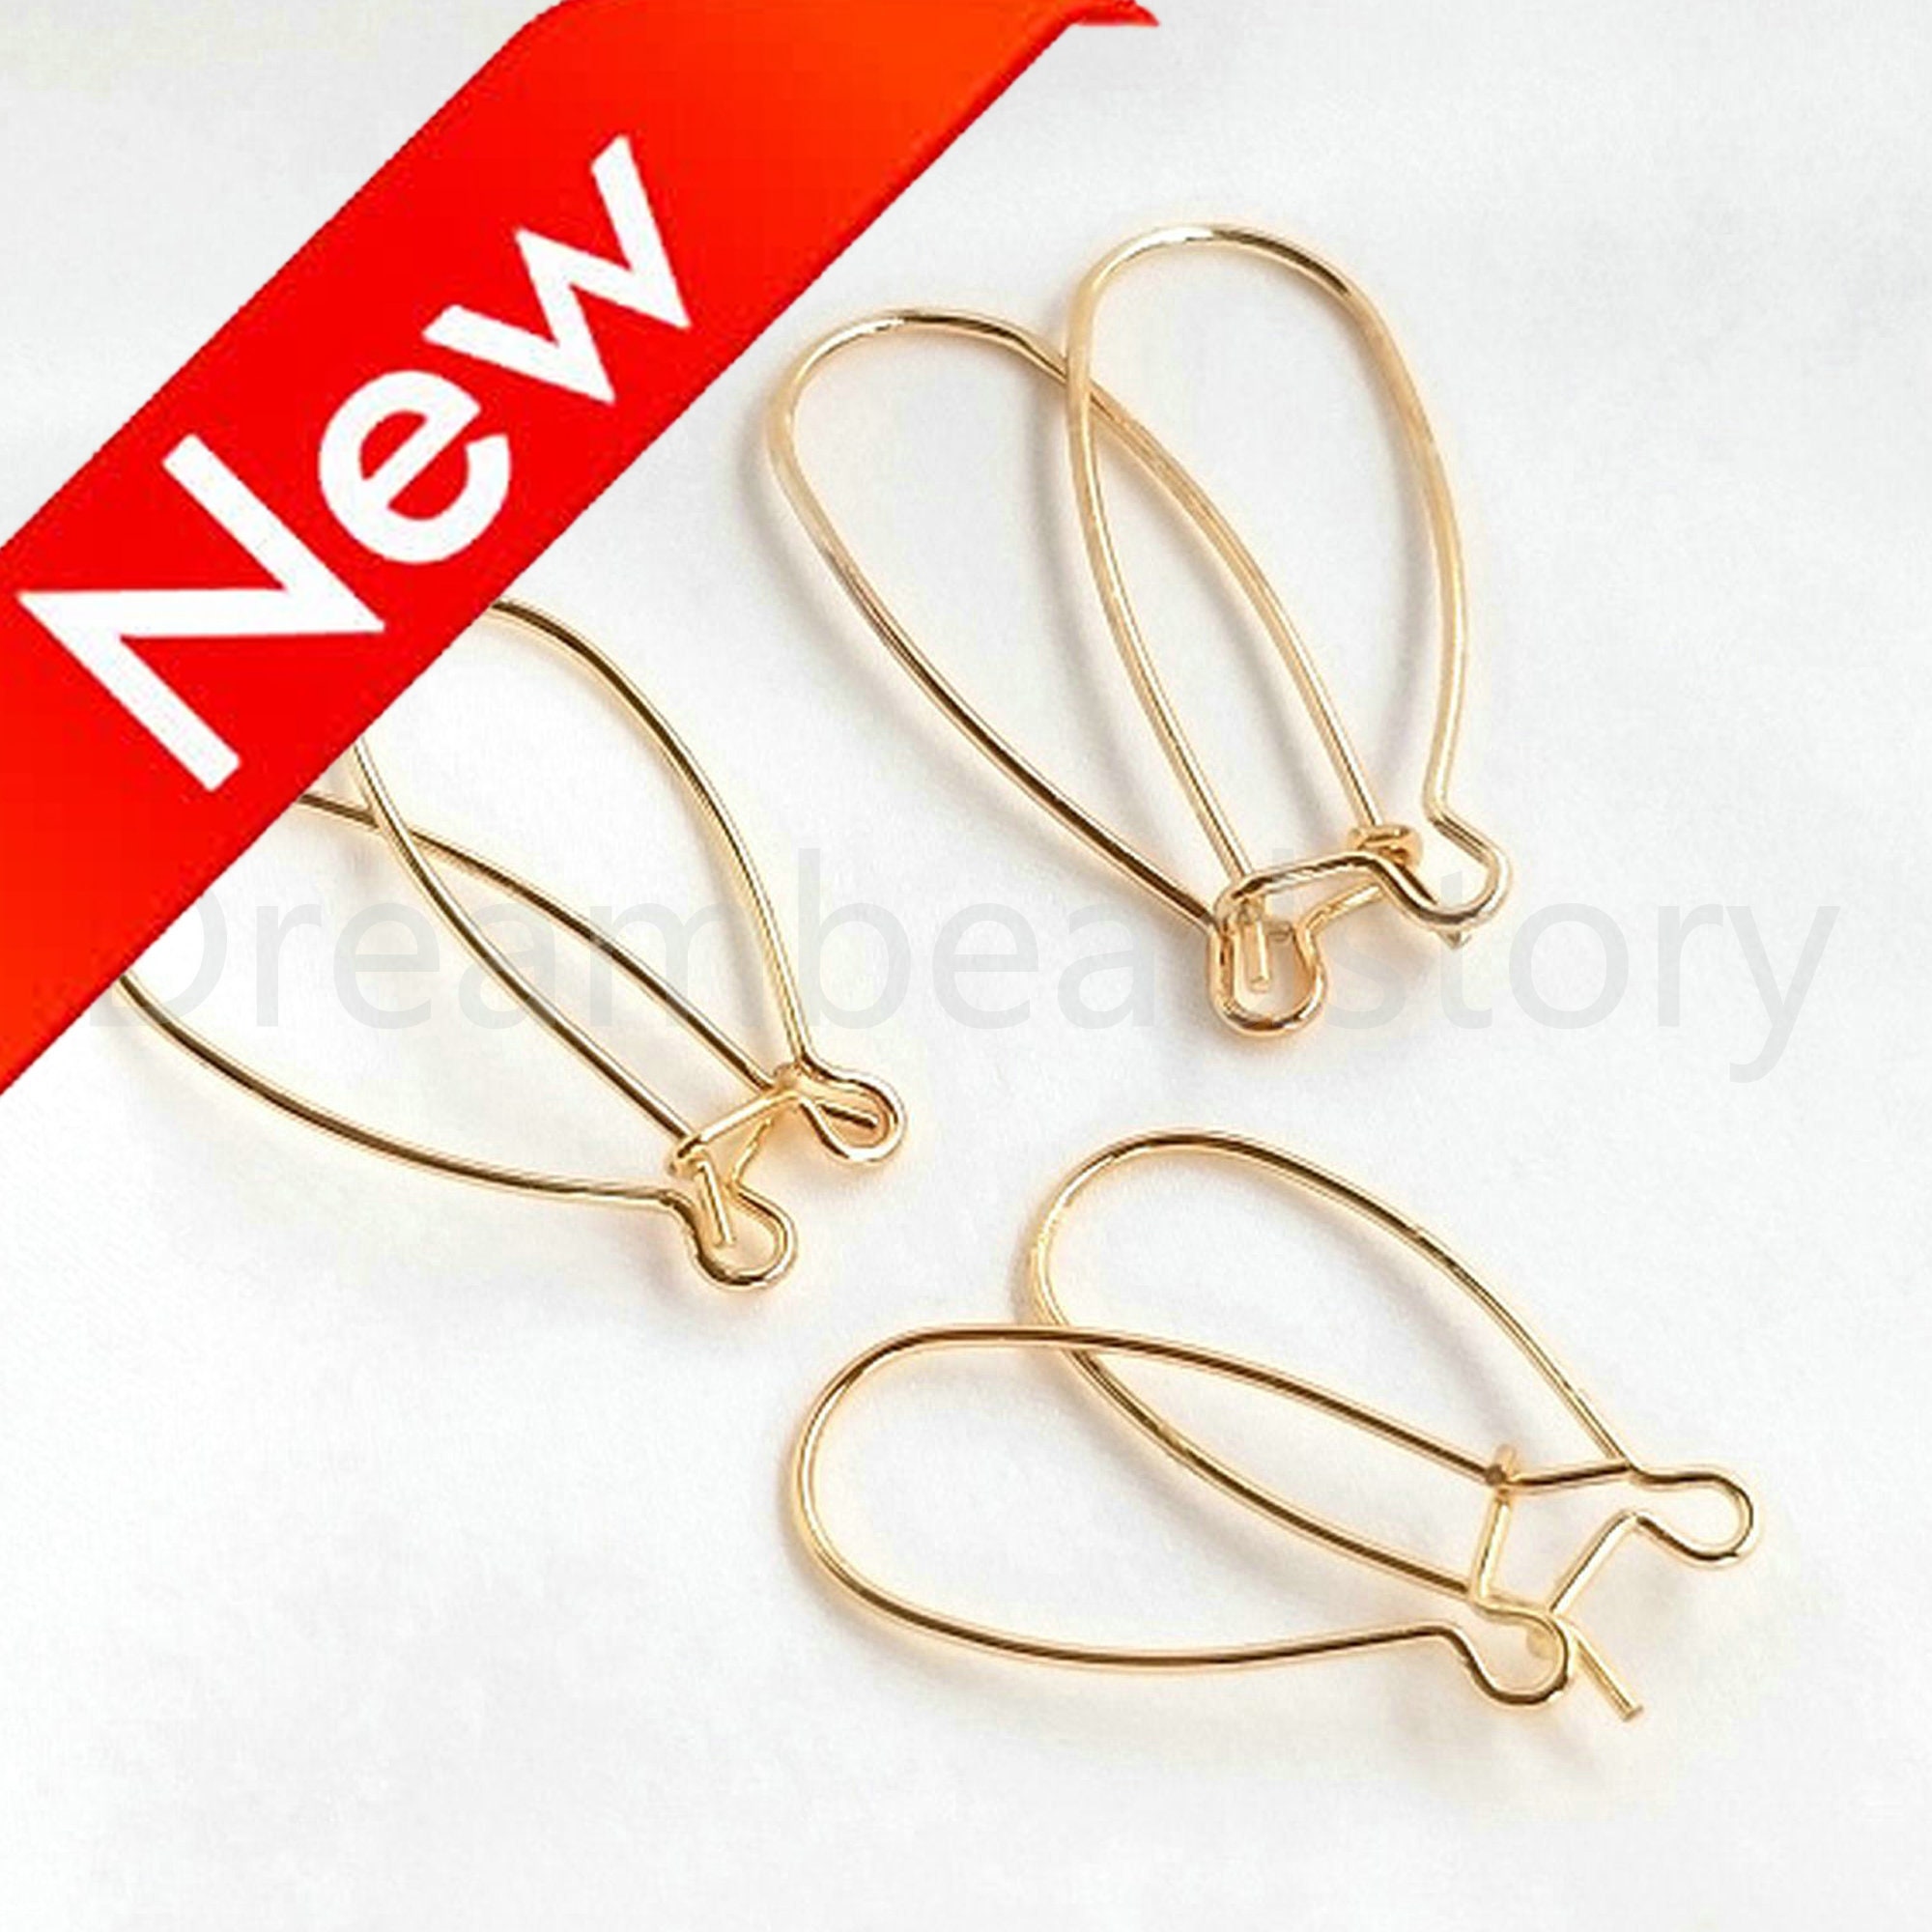 23.5mm Kidney Wire Interchangeable Hook Earrings 14kt Gold Filled - Stones  & Findings